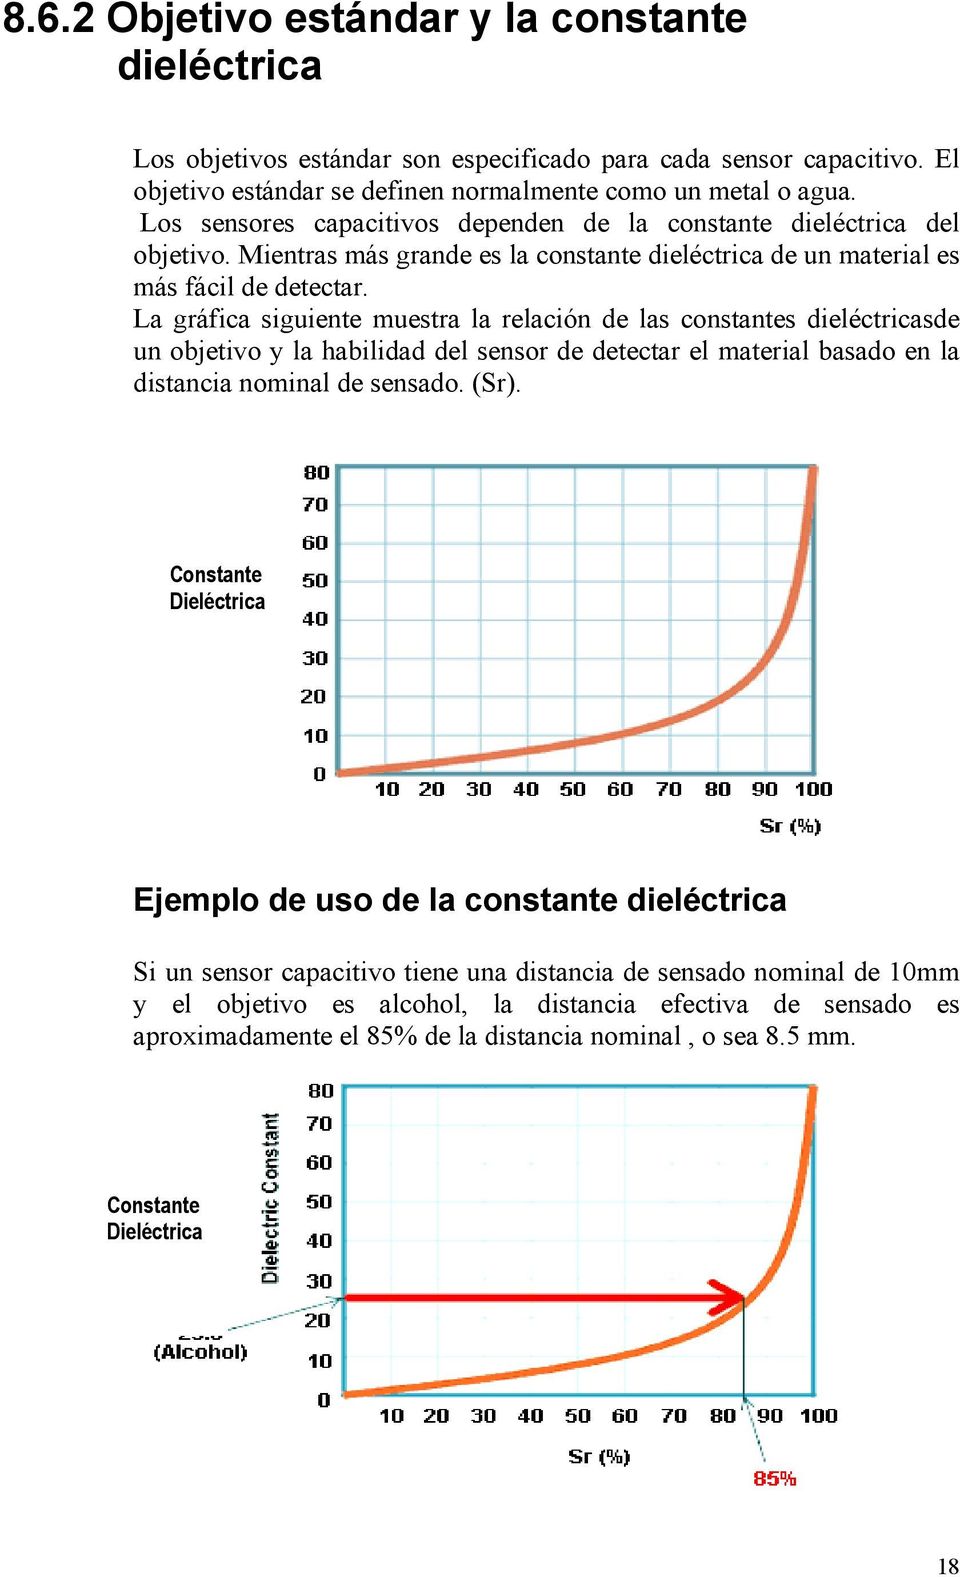 La gráfica siguiente muestra la relación de las constantes dieléctricasde un objetivo y la habilidad del sensor de detectar el material basado en la distancia nominal de sensado. (Sr).